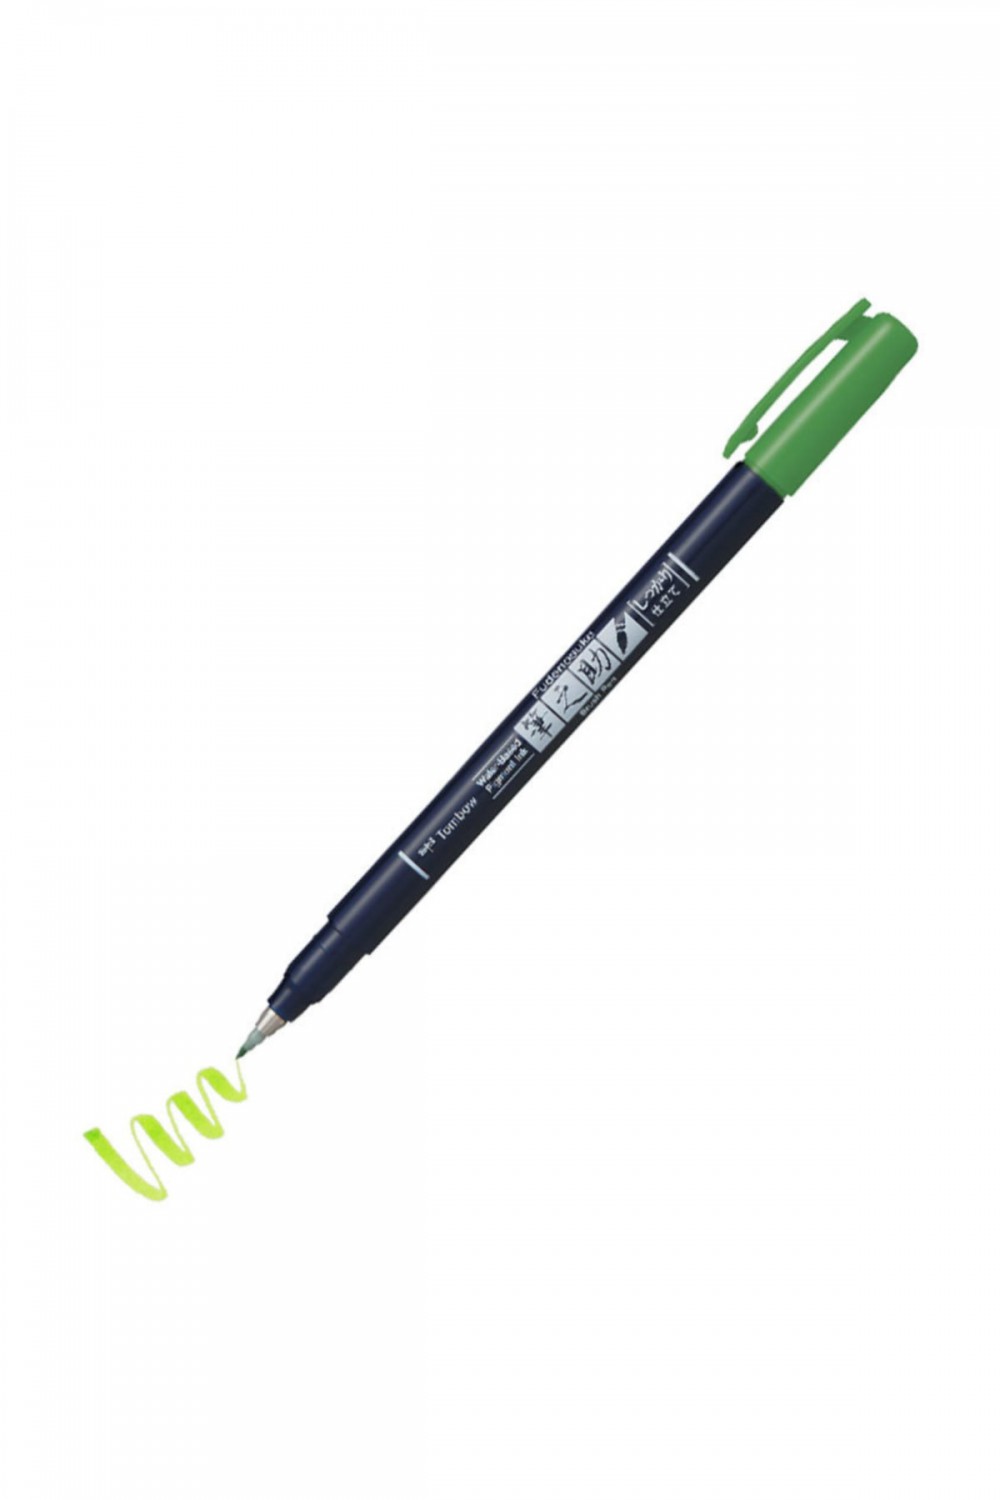 Tombow Fudenosuke Brush Pen Fırça Uçlu Kalem Sert Uç - Yeşil